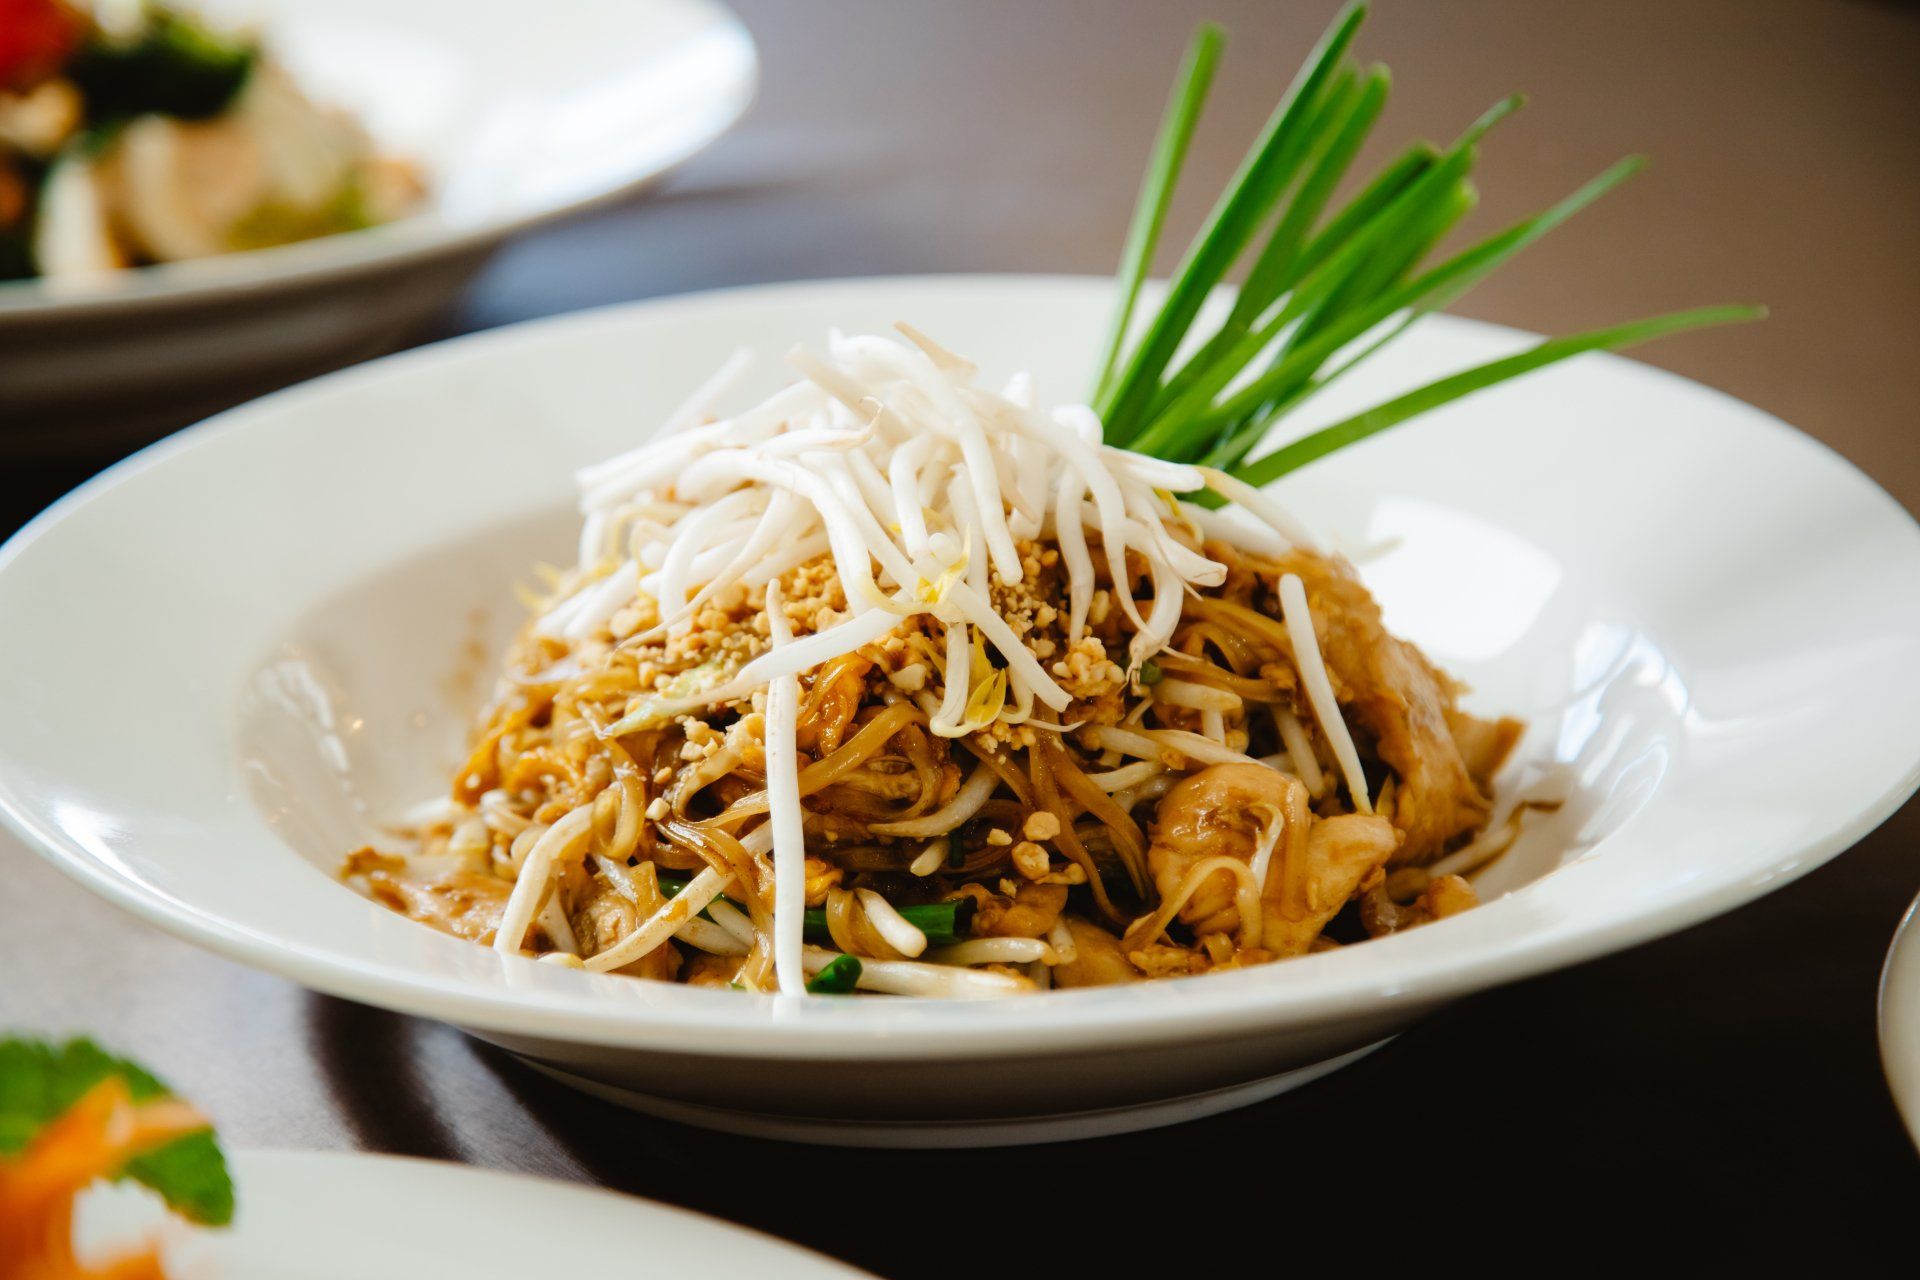 May's Thai Wynnum - Food delivery - Wynnum - Order online